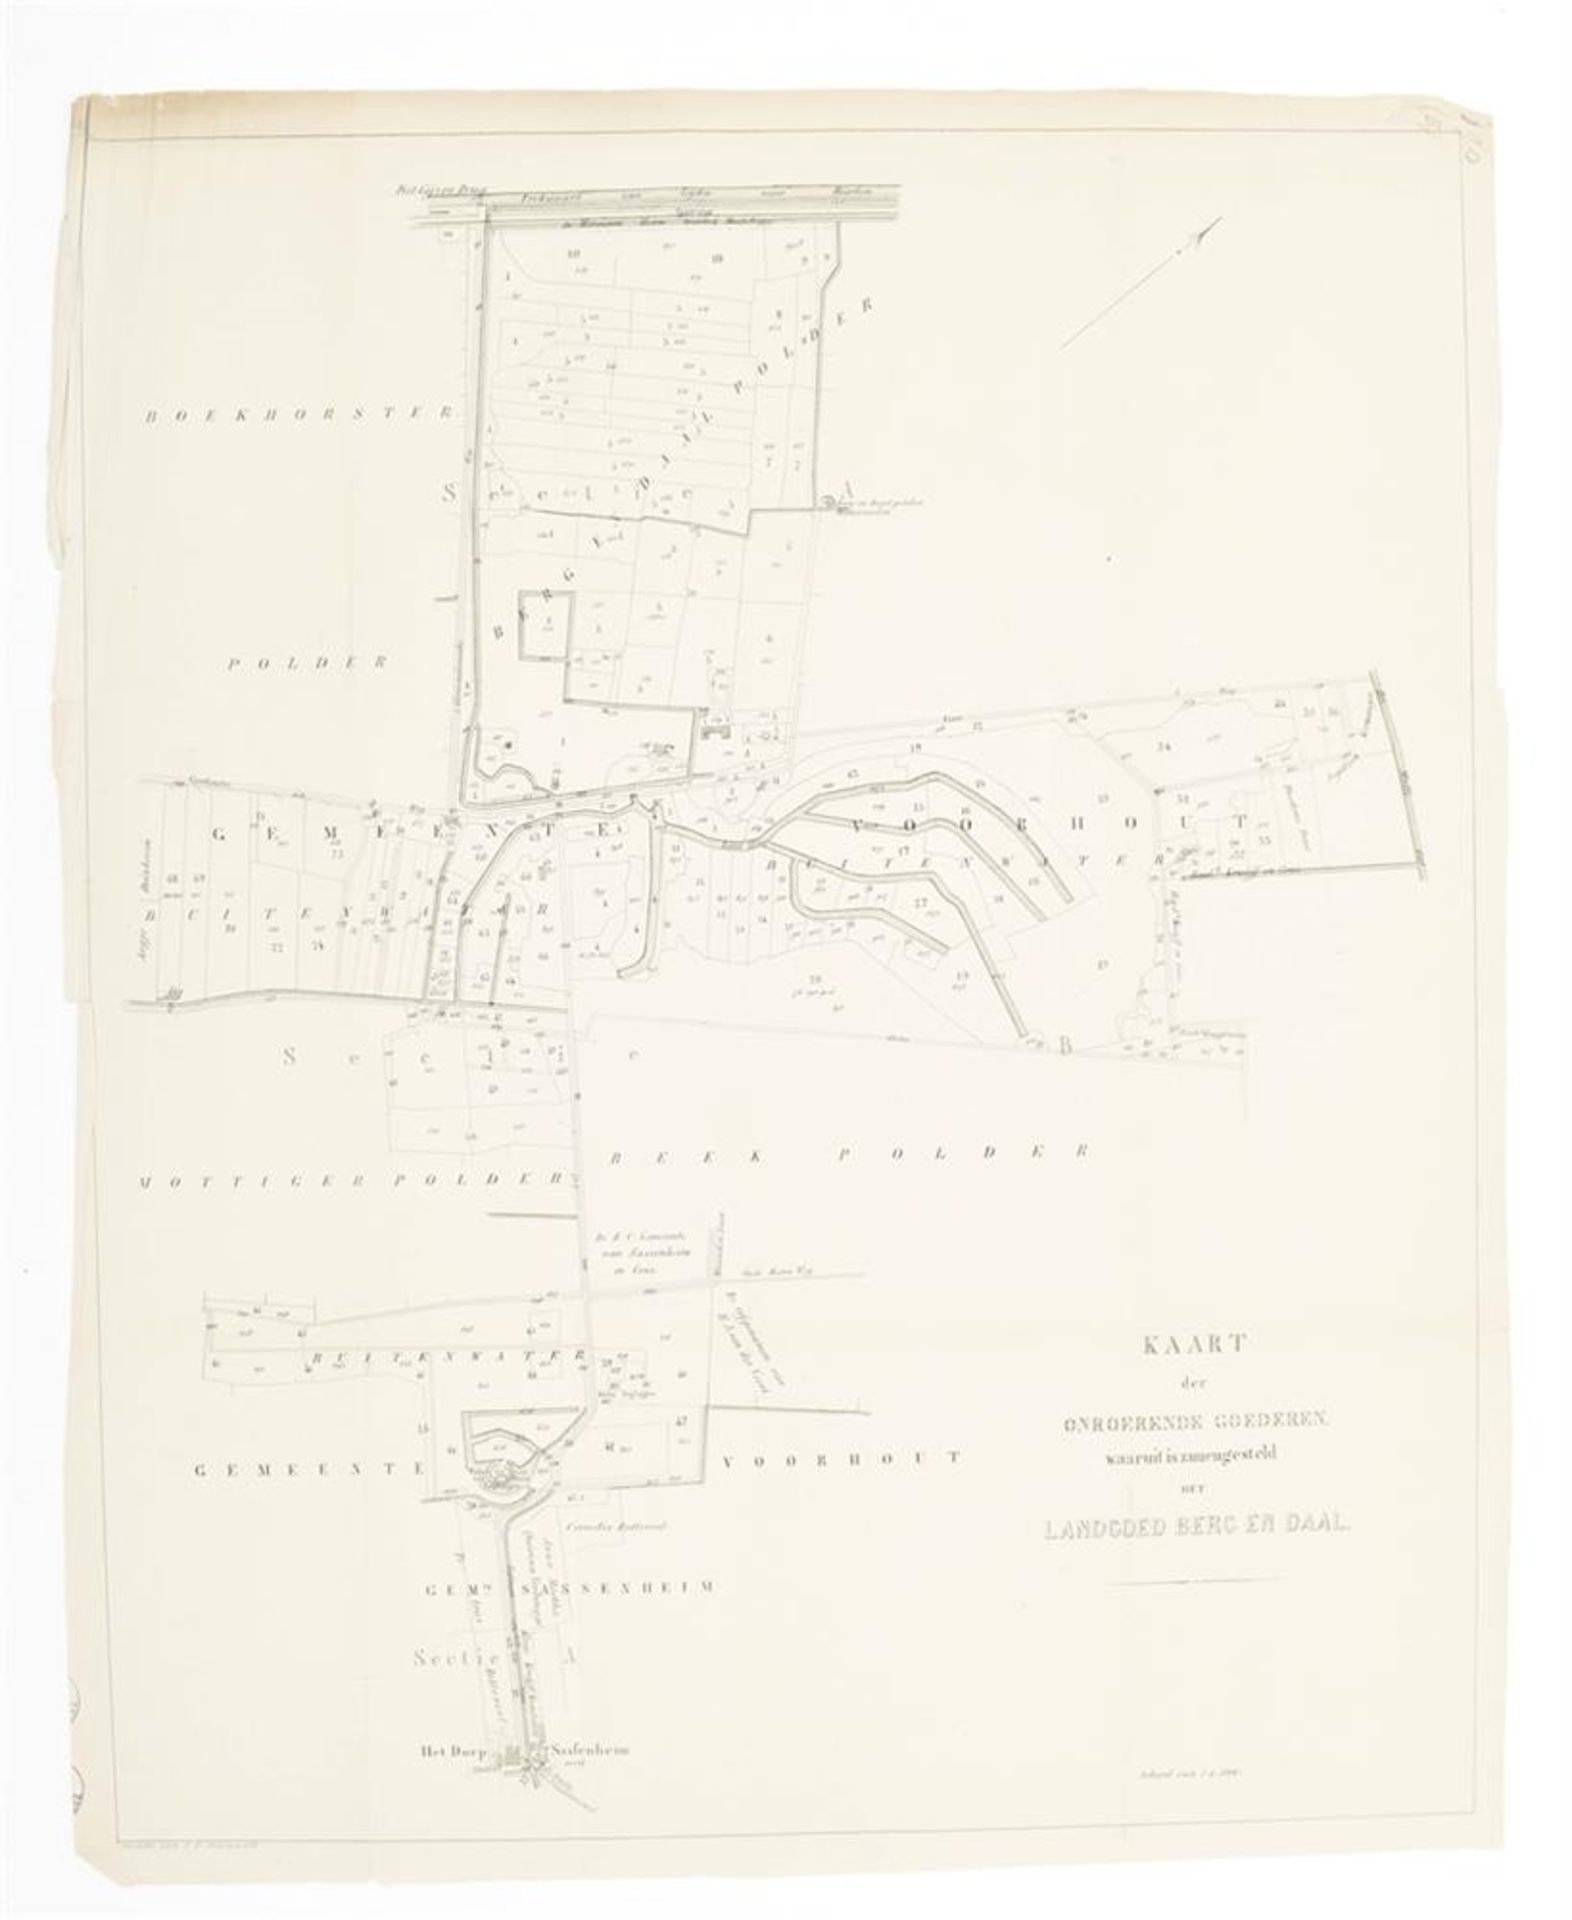 Kaart der onroerende goederen waaruit is zamengesteld het Landgoed Berg en Daal - Image 4 of 4